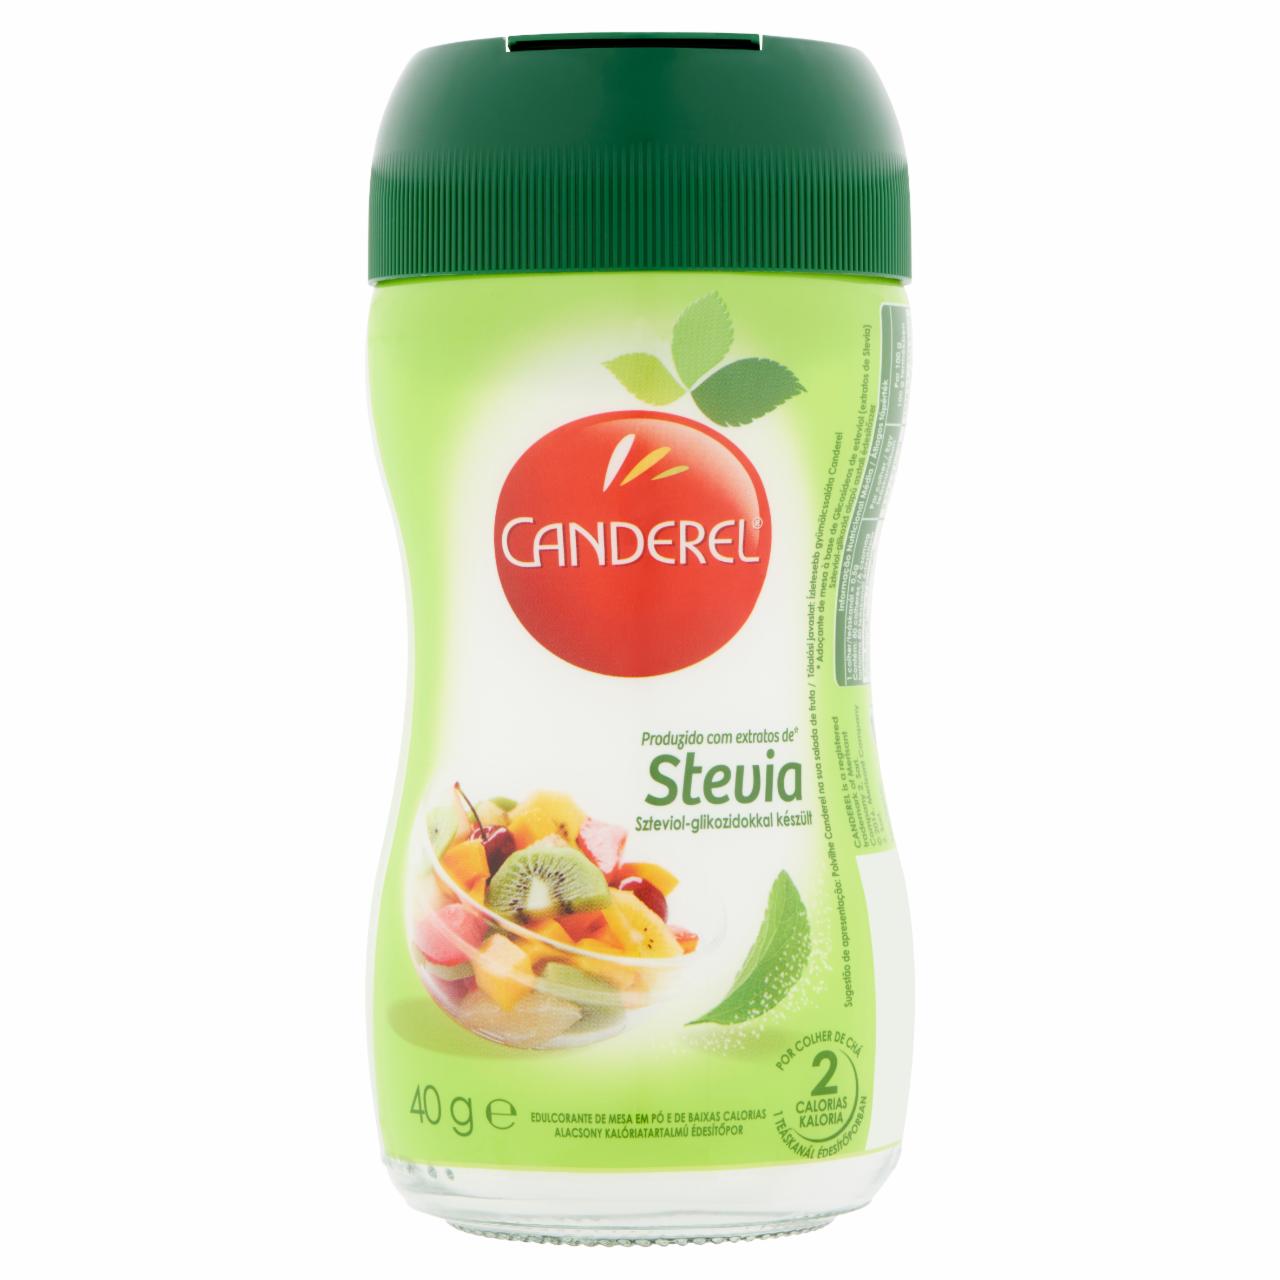 Képek - Canderel Stevia alacsony kalóriatartalmú édesítőpor 40 g